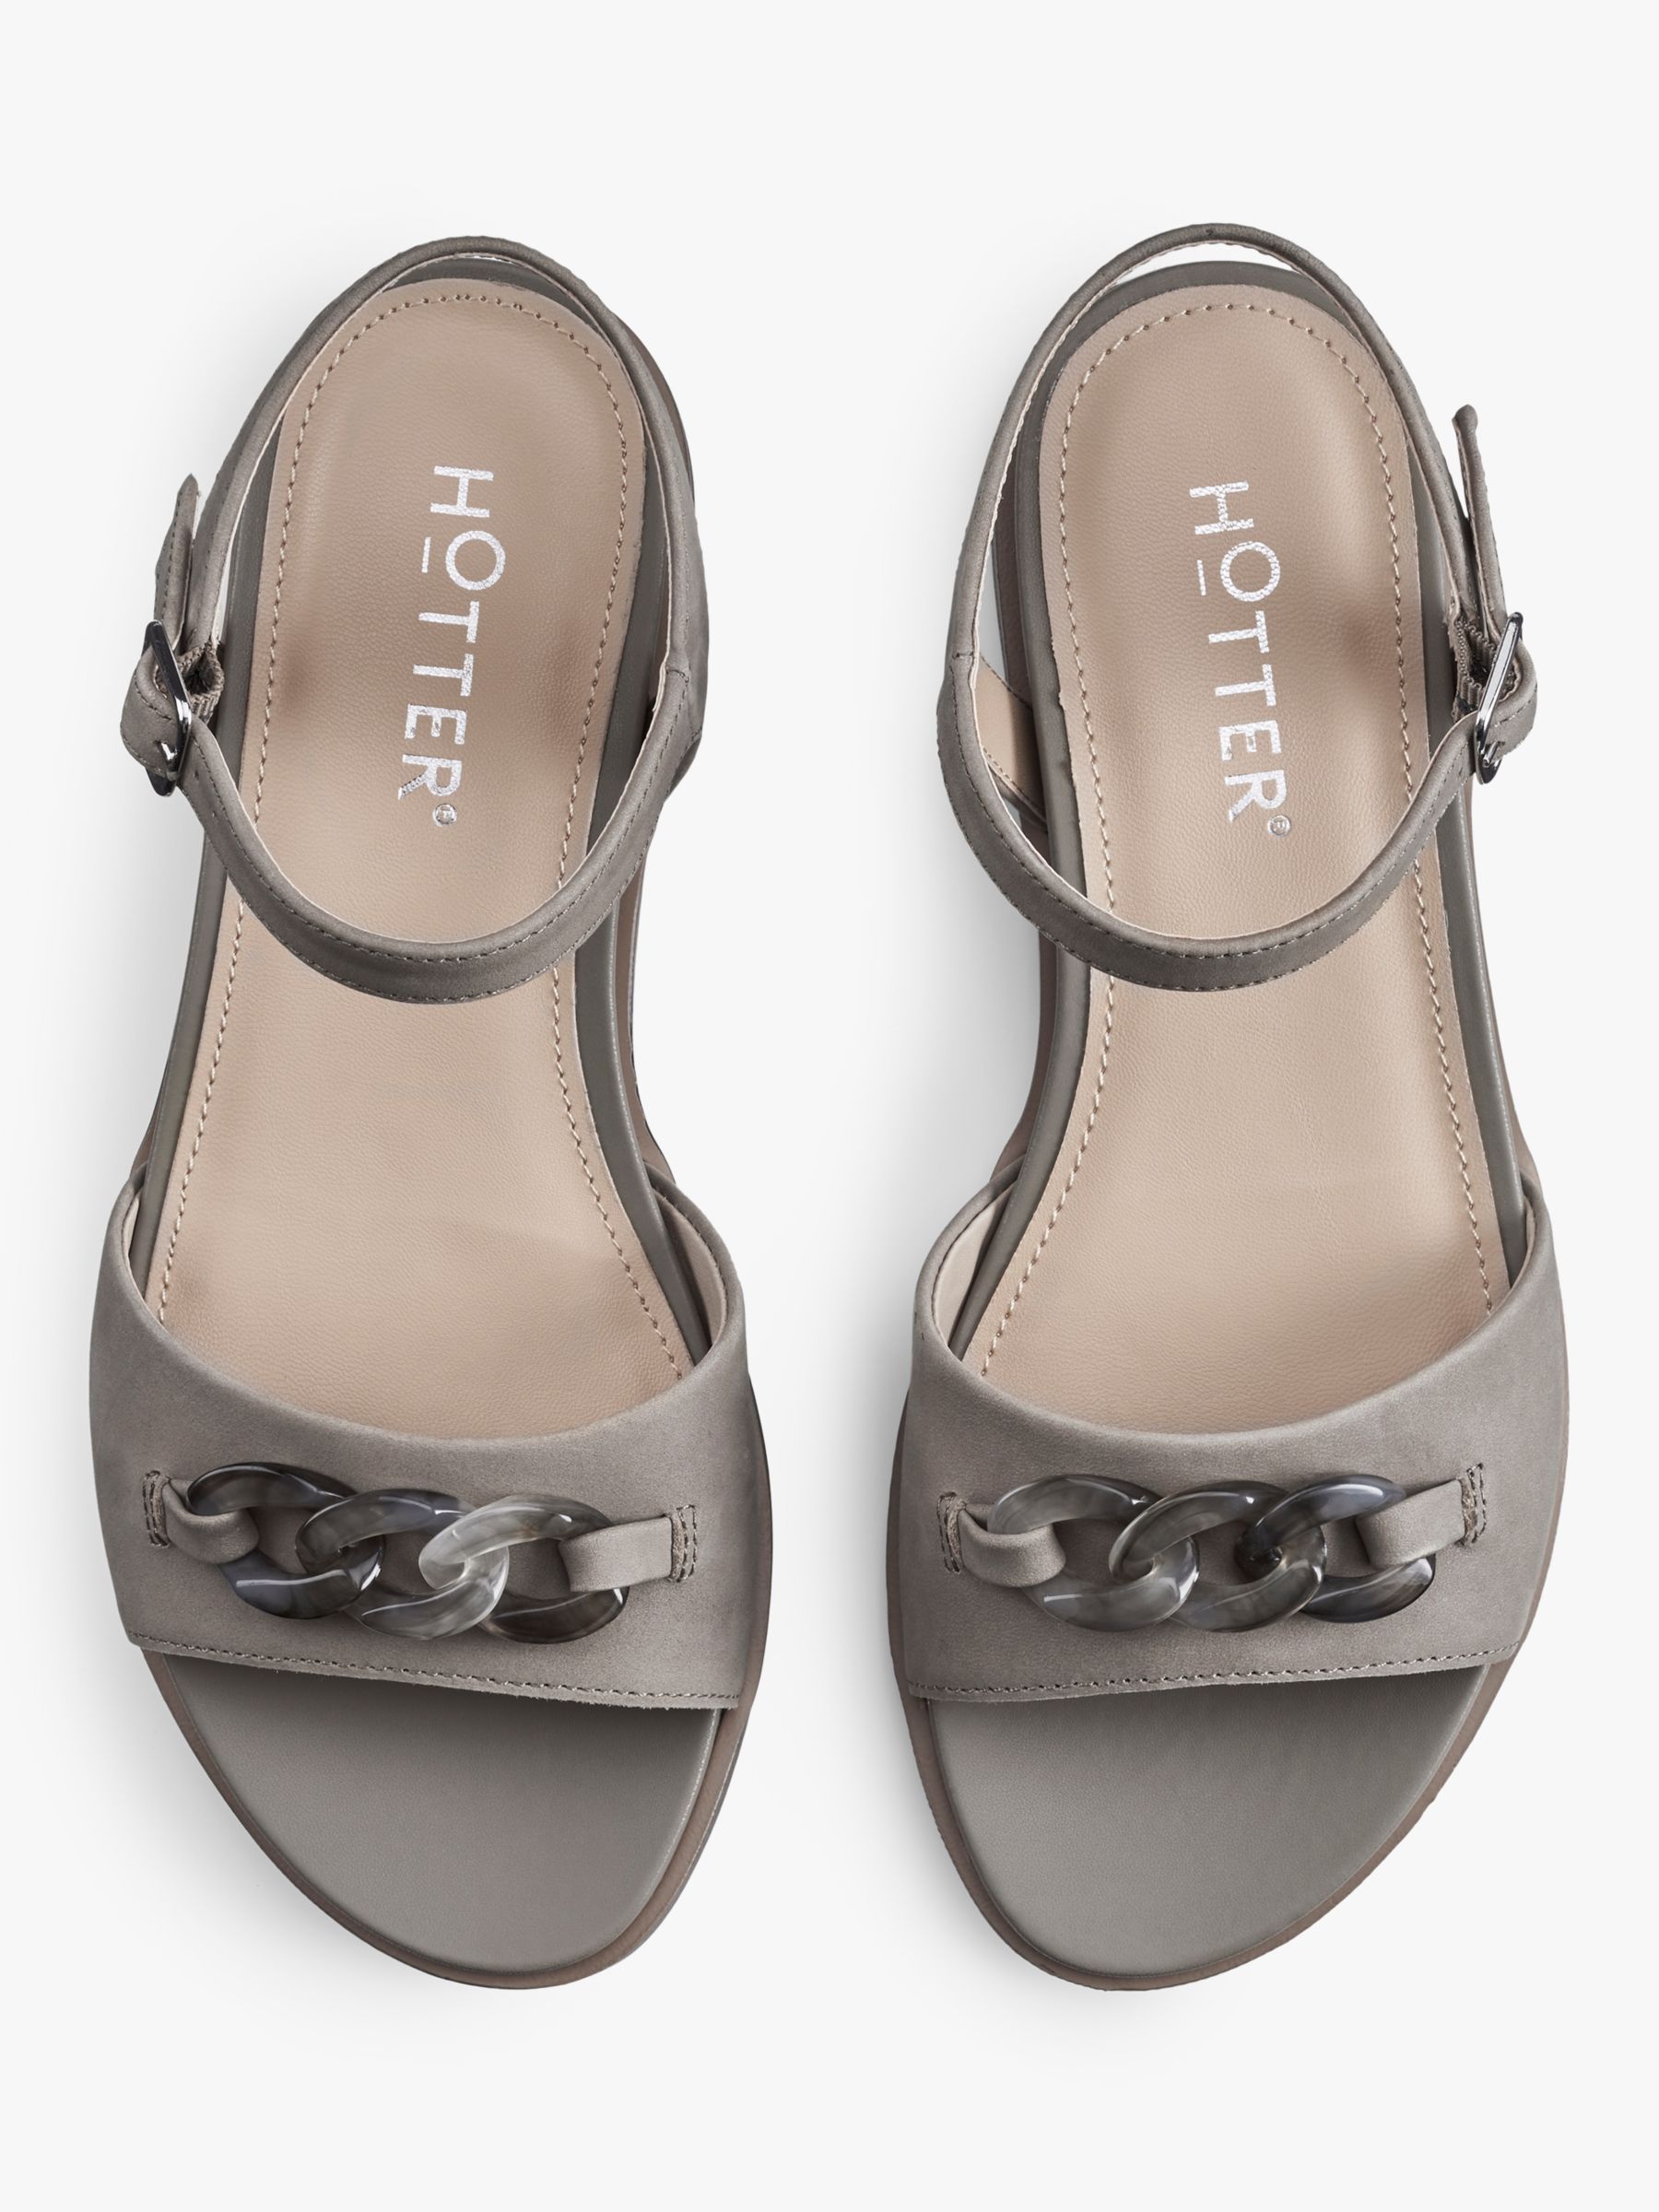 Buy Hotter Modena Nubuck Ankle Strap Sandals, Grey Online at johnlewis.com